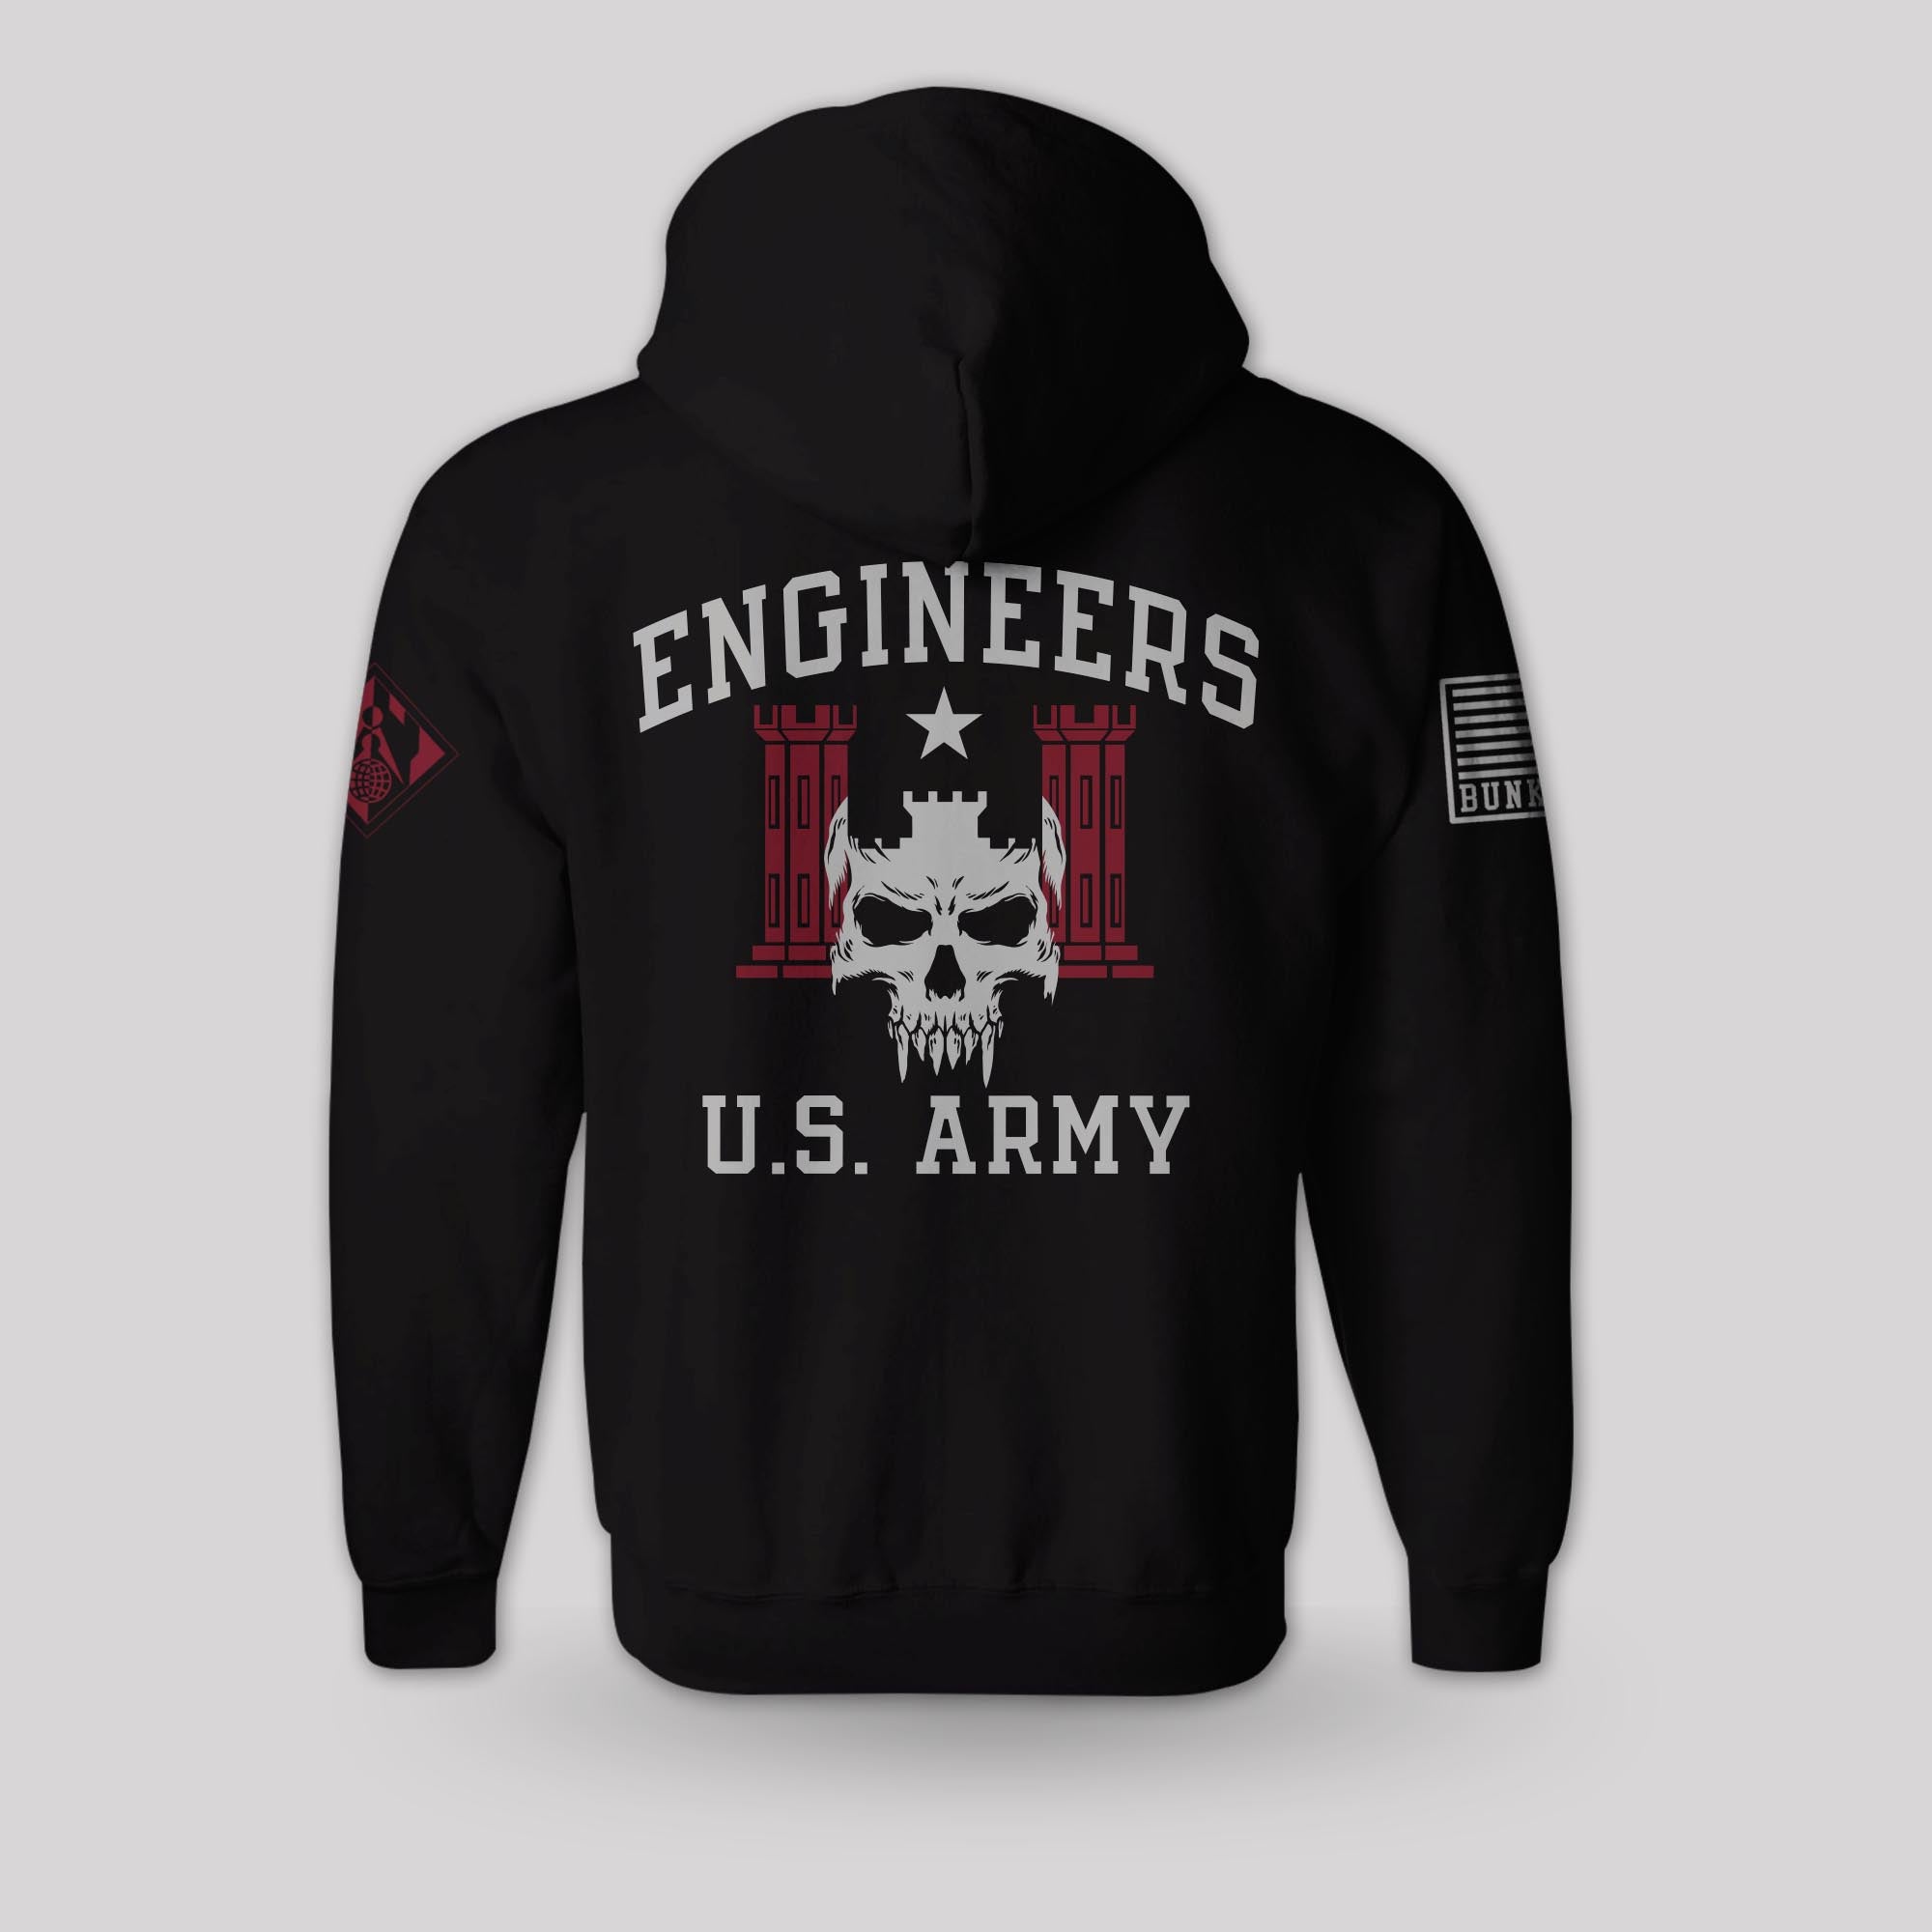 Engineers Hoodie - Army